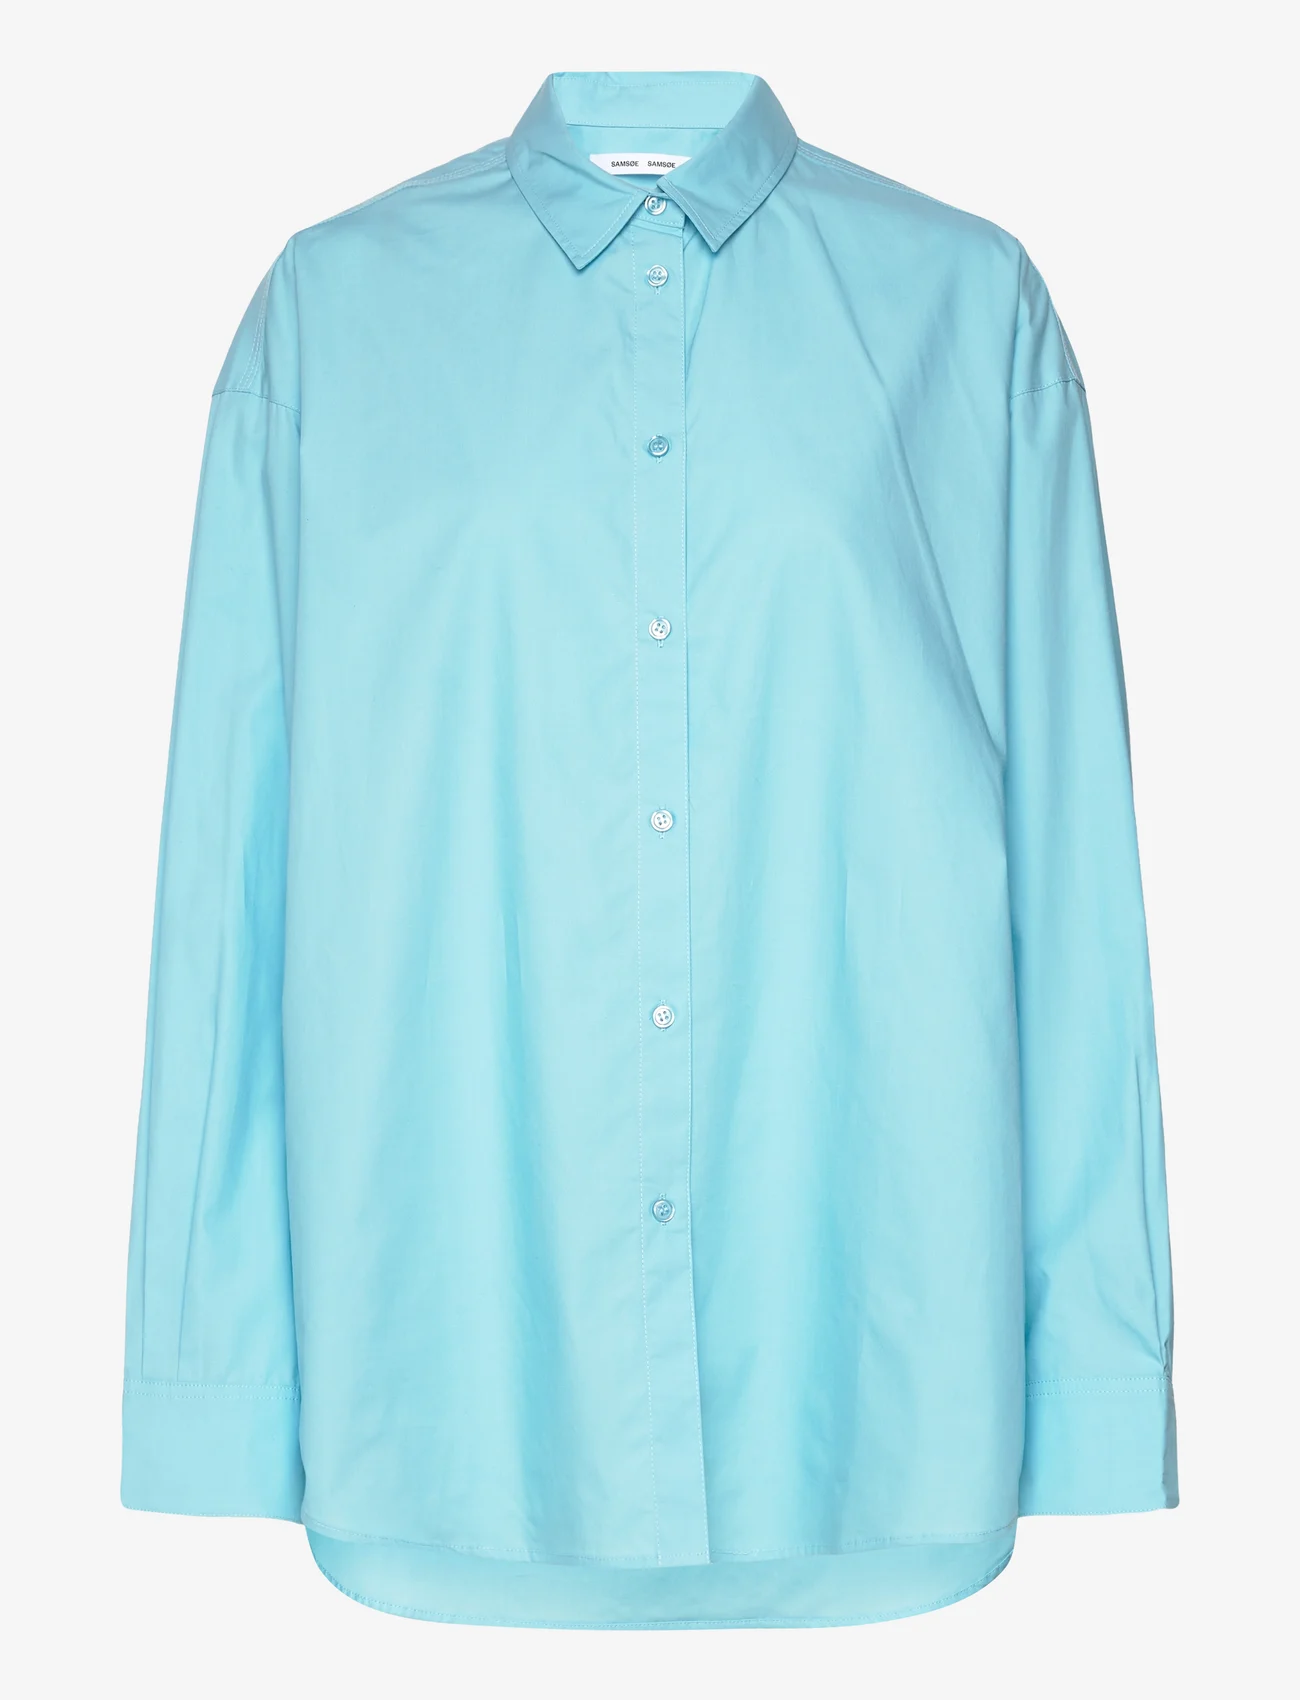 Samsøe Samsøe - Lua np shirt 14644 - langermede skjorter - blue topaz - 0